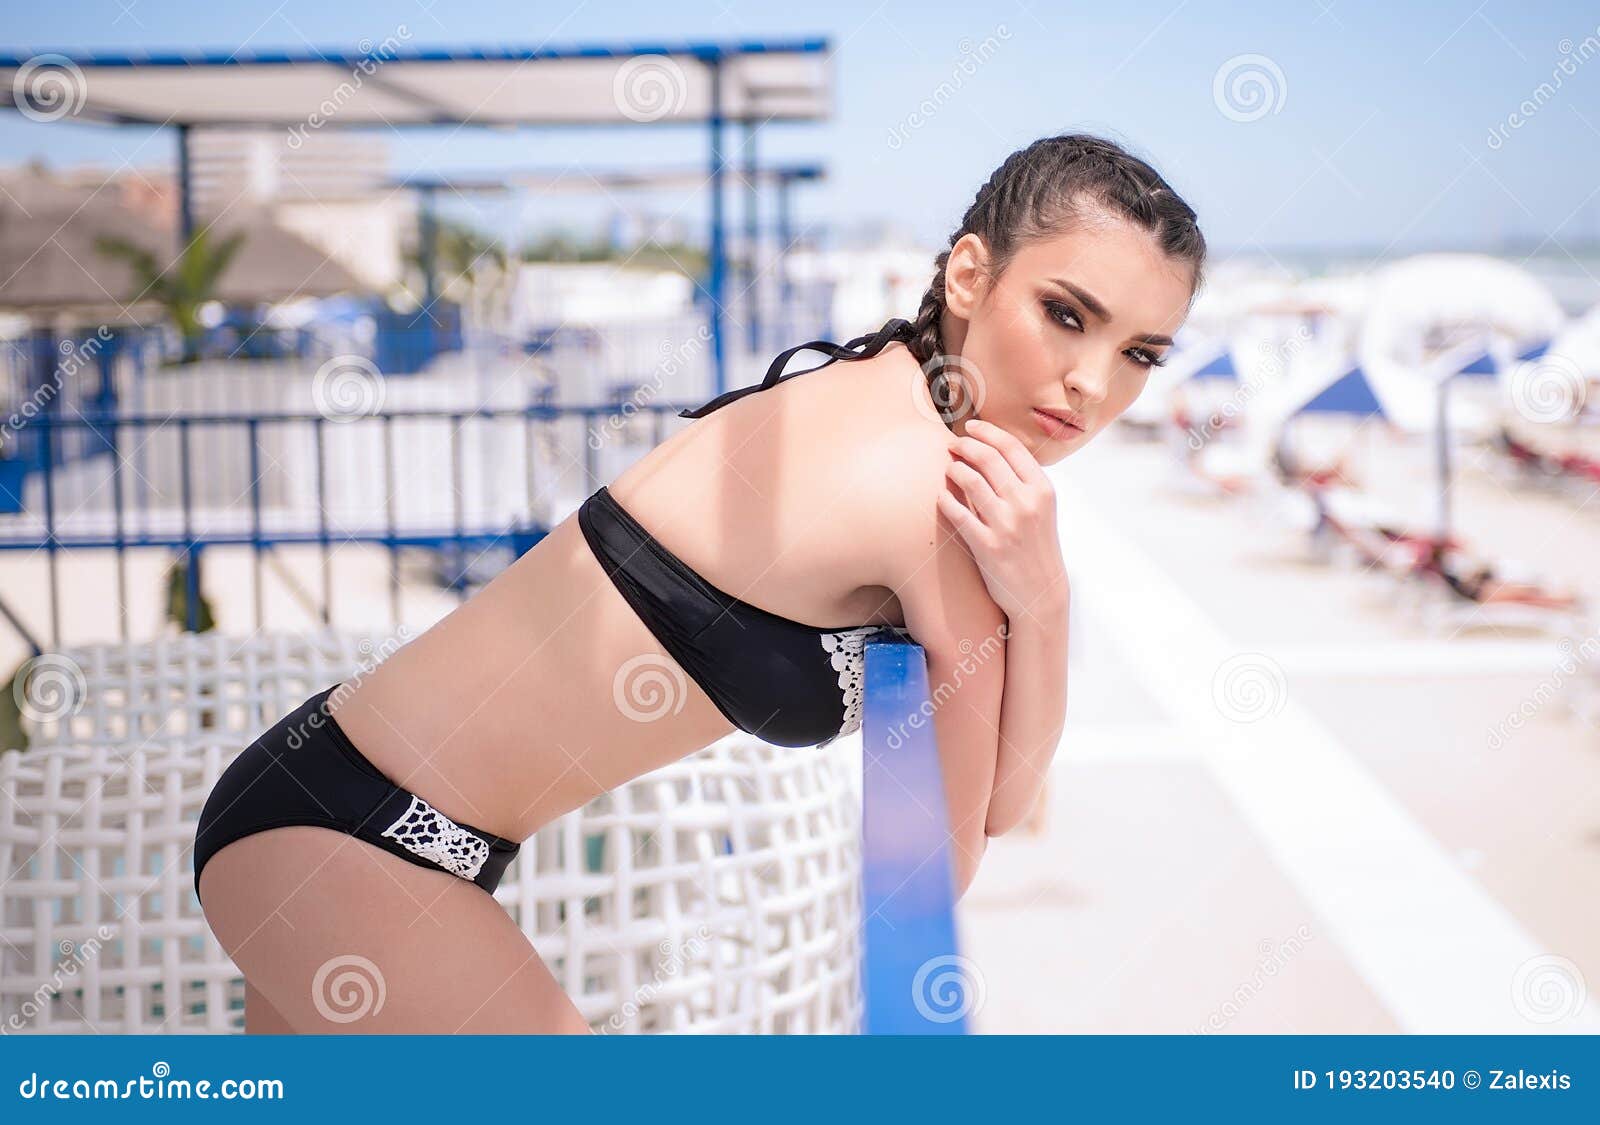 camille baldazo share hot women bent over photos